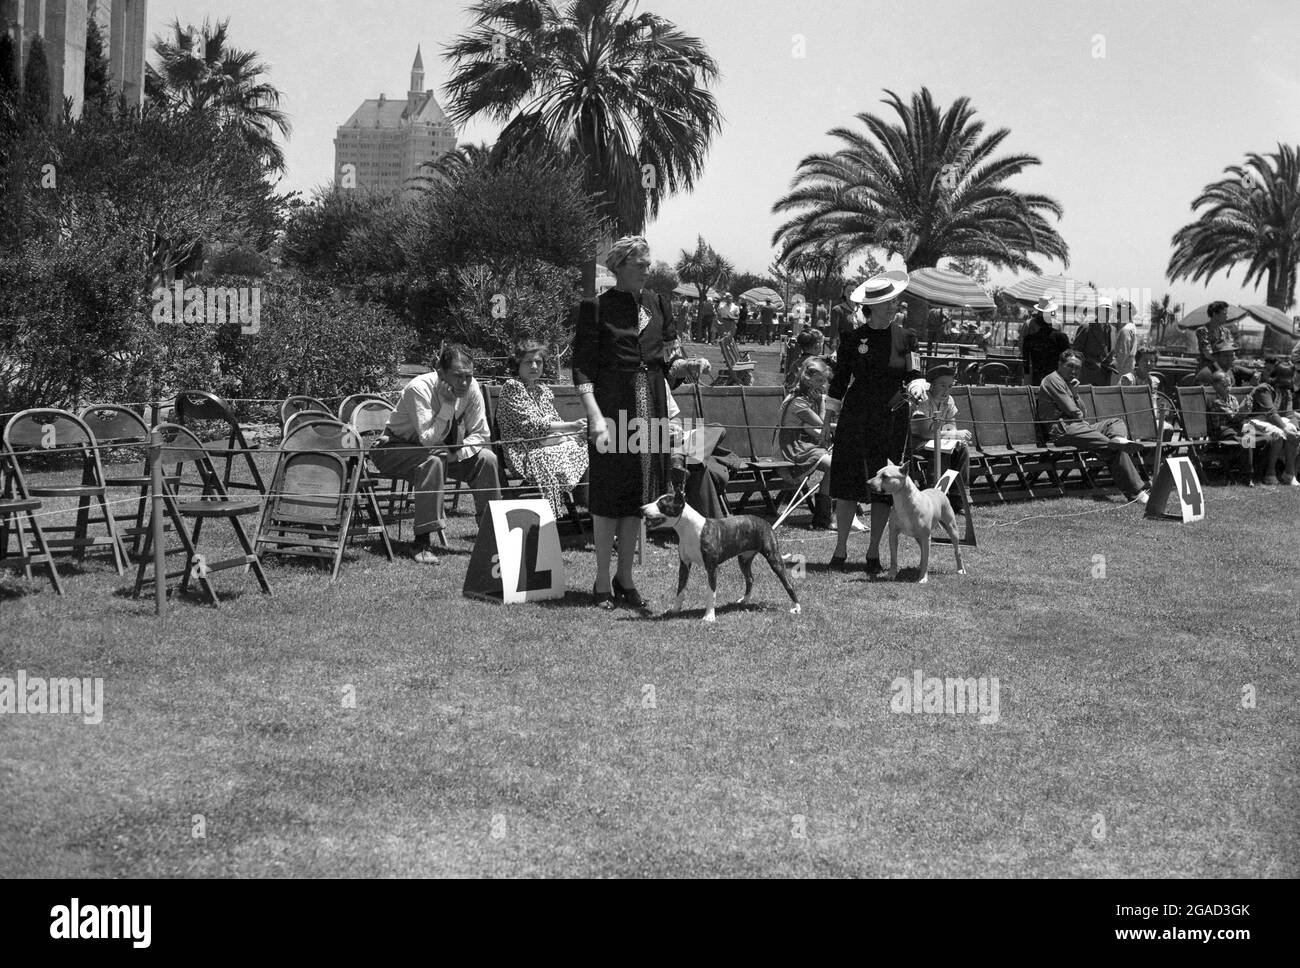 1950s, historisch, Hundeschau, Kalifornien, USA, Elegant gekleidete Damen mit den Haustierhunden, die auf dem Rasen neben einer Nummer stehen. Stockfoto